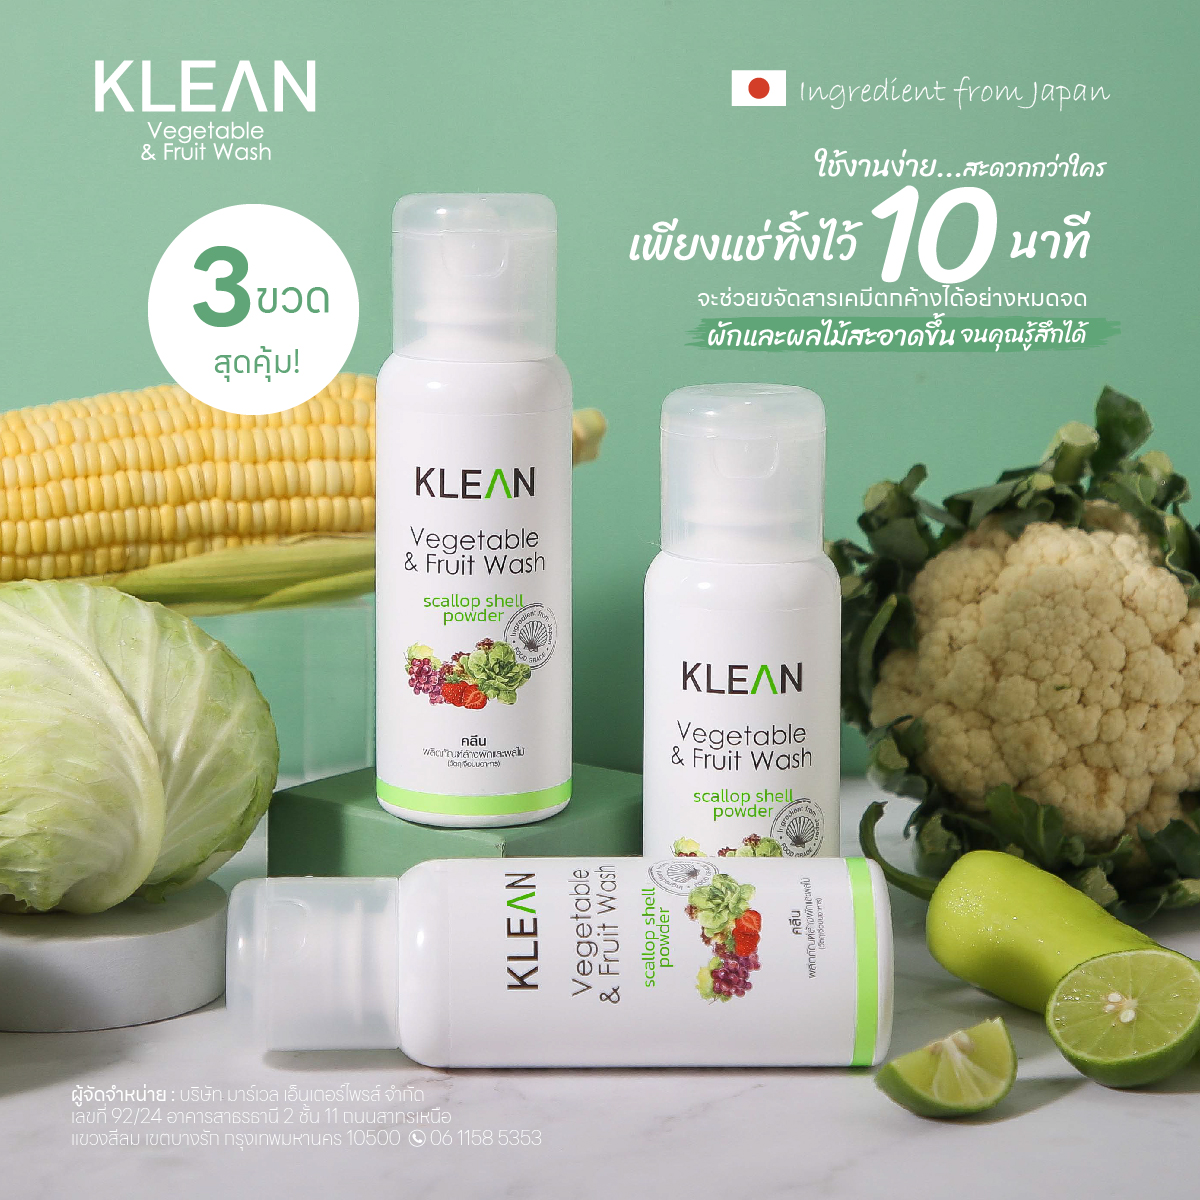 [สุดคุ้ม 3 ขวด] ผลิตภัณฑ์ล้างผักและผลไม้ KLEAN ผลิตจากเปลือกหอยเชลล์ธรรมชาติ 100% จากประเทศญี่ปุ่น Vegetable & Fruit Wash